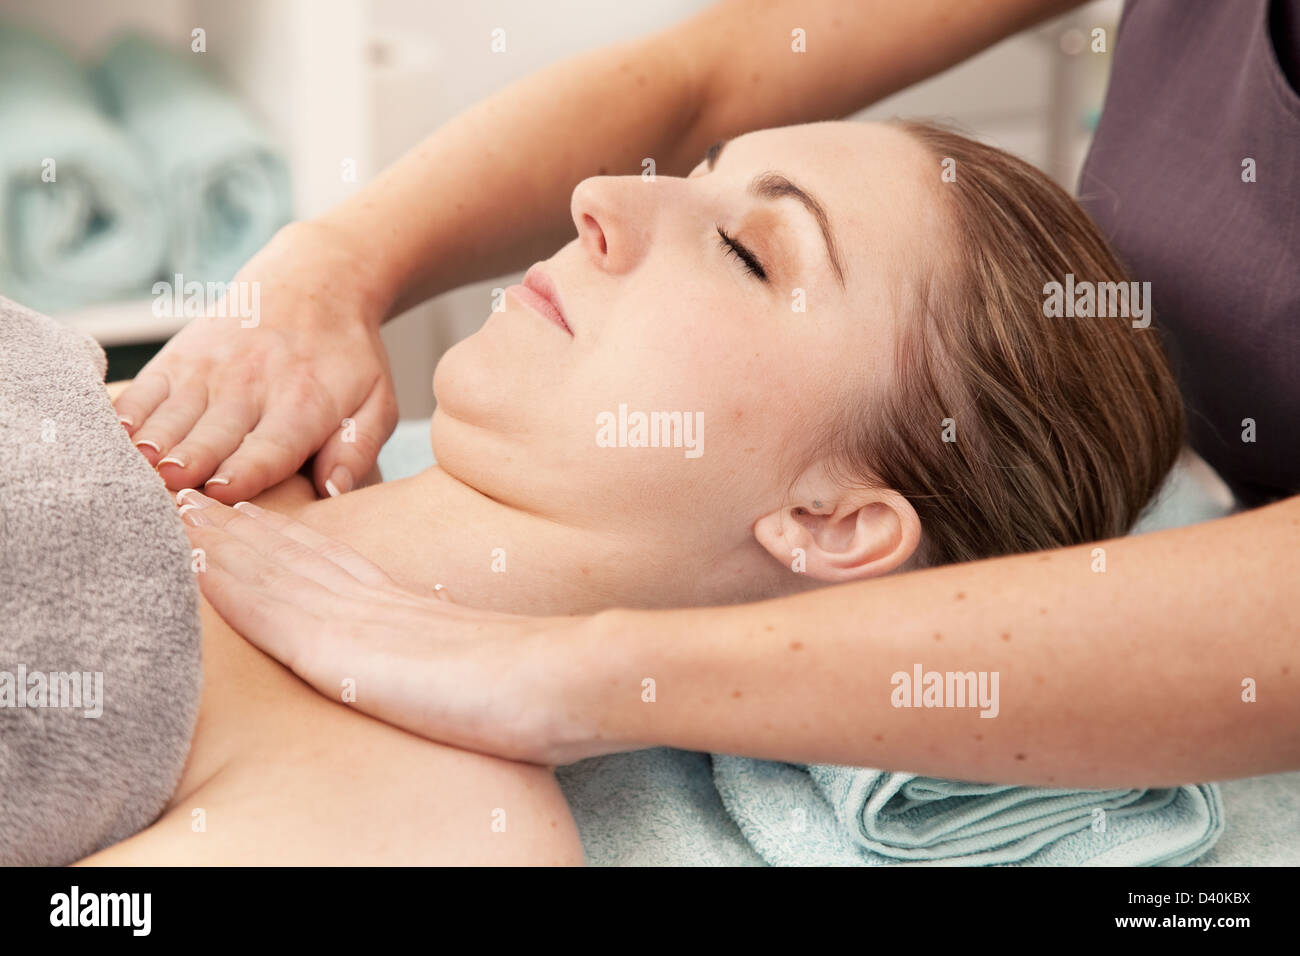 https://c8.alamy.com/comp/D40KBX/young-woman-having-a-relaxing-shoulder-massage-in-a-beauty-salon-D40KBX.jpg